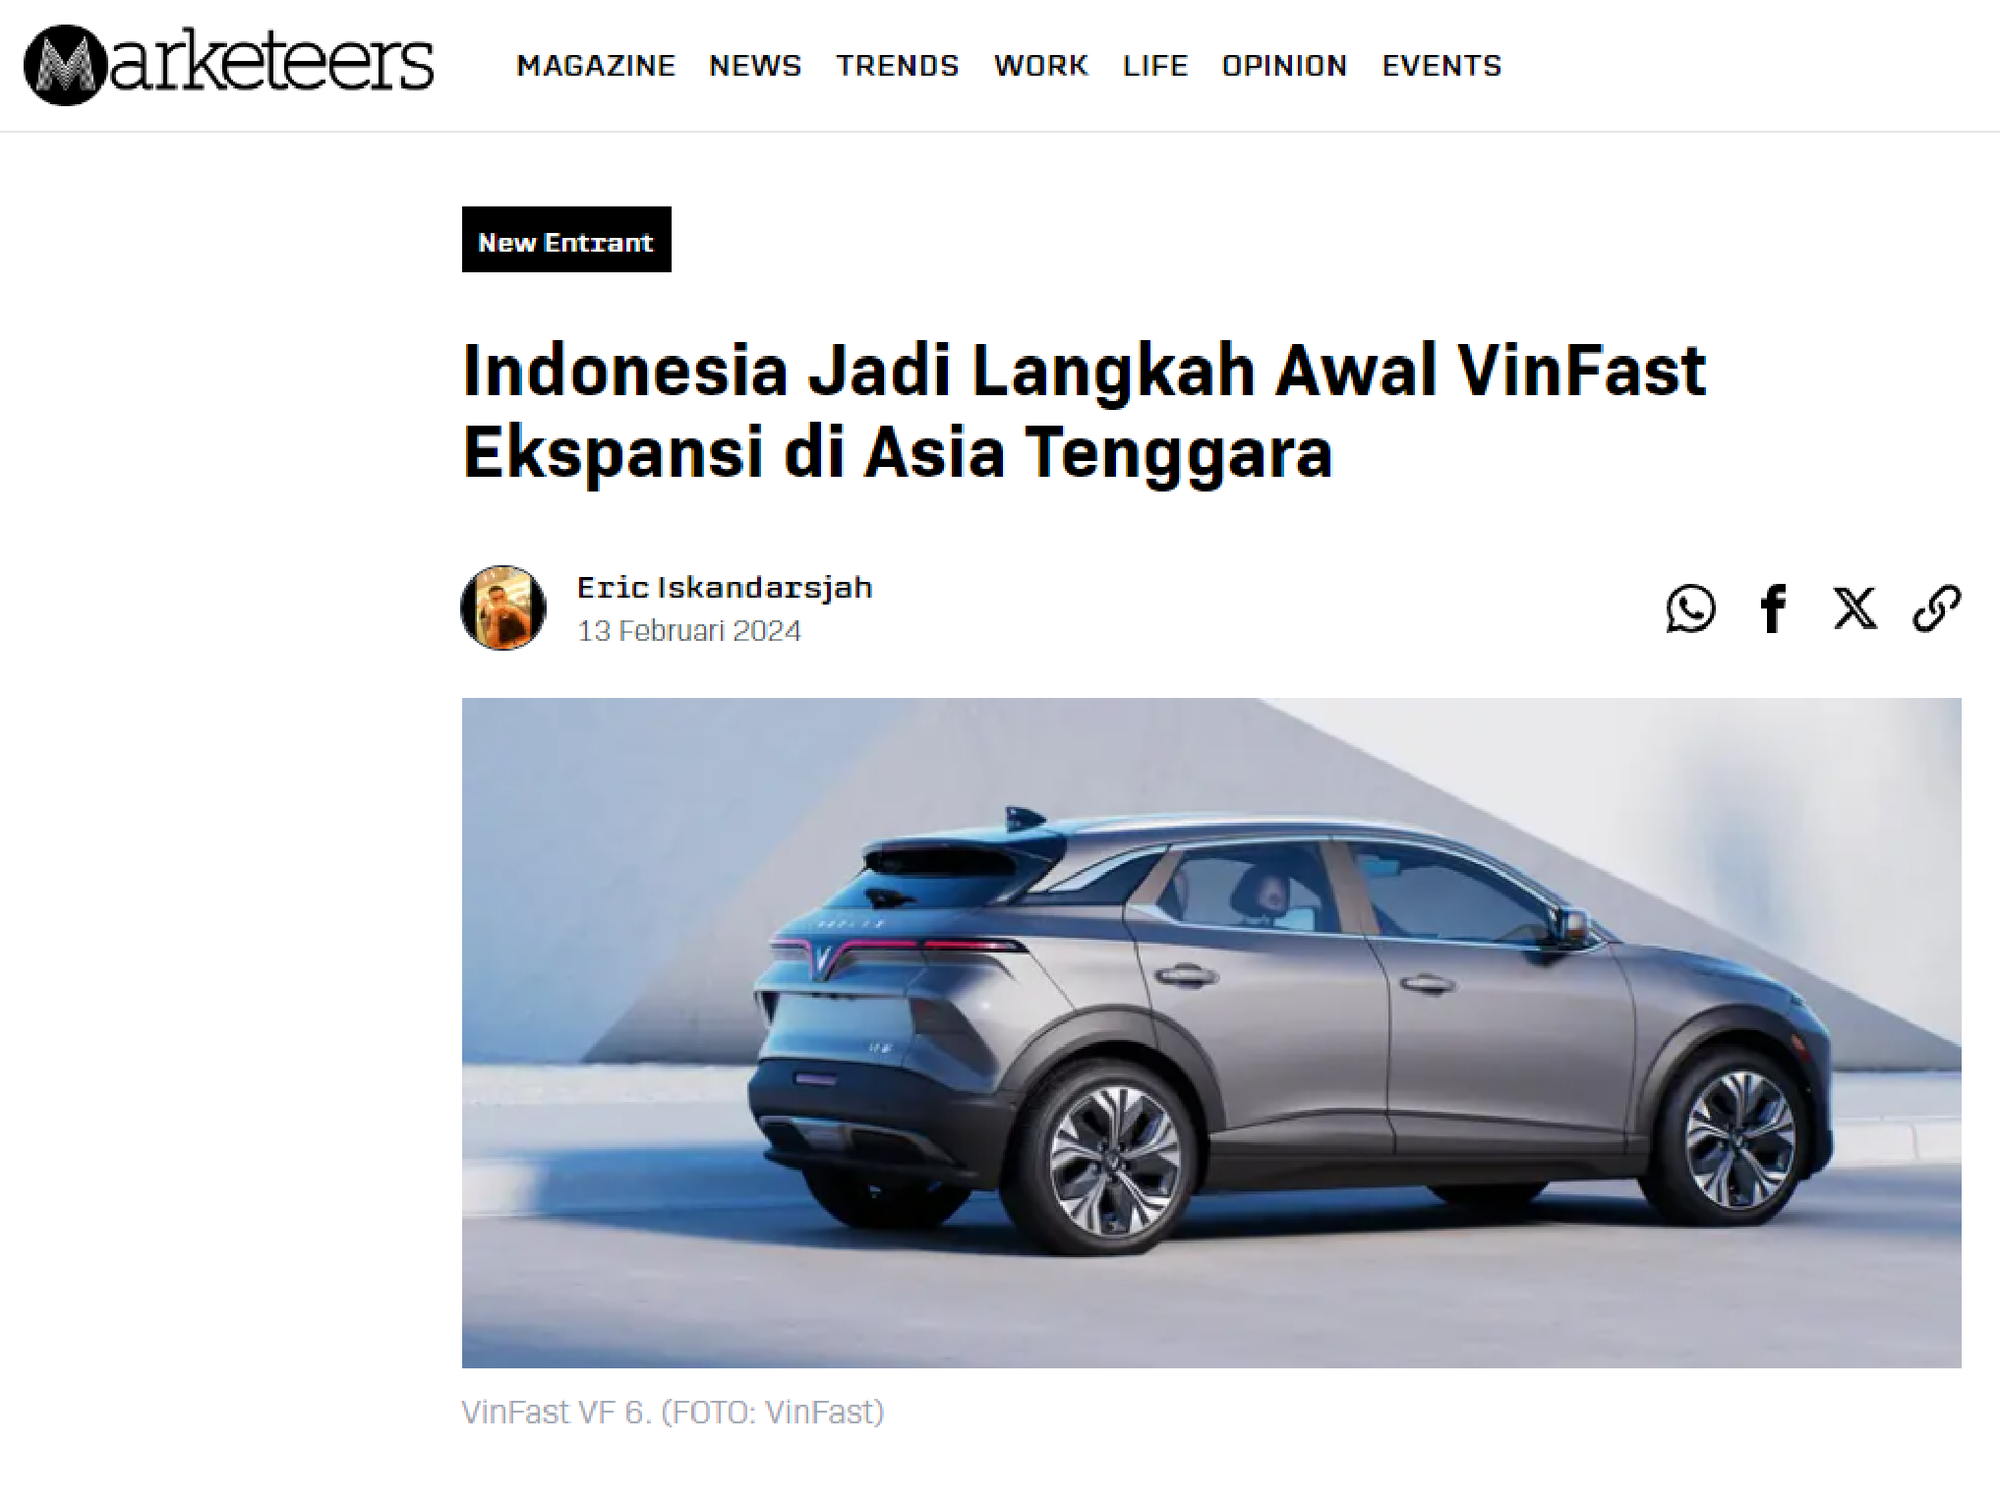 VinFast mang xe tới Indonesia, báo nước ngoài nhất loạt đưa tin: Hé lộ nhiều điều chưa được biết tới? - Ảnh 5.